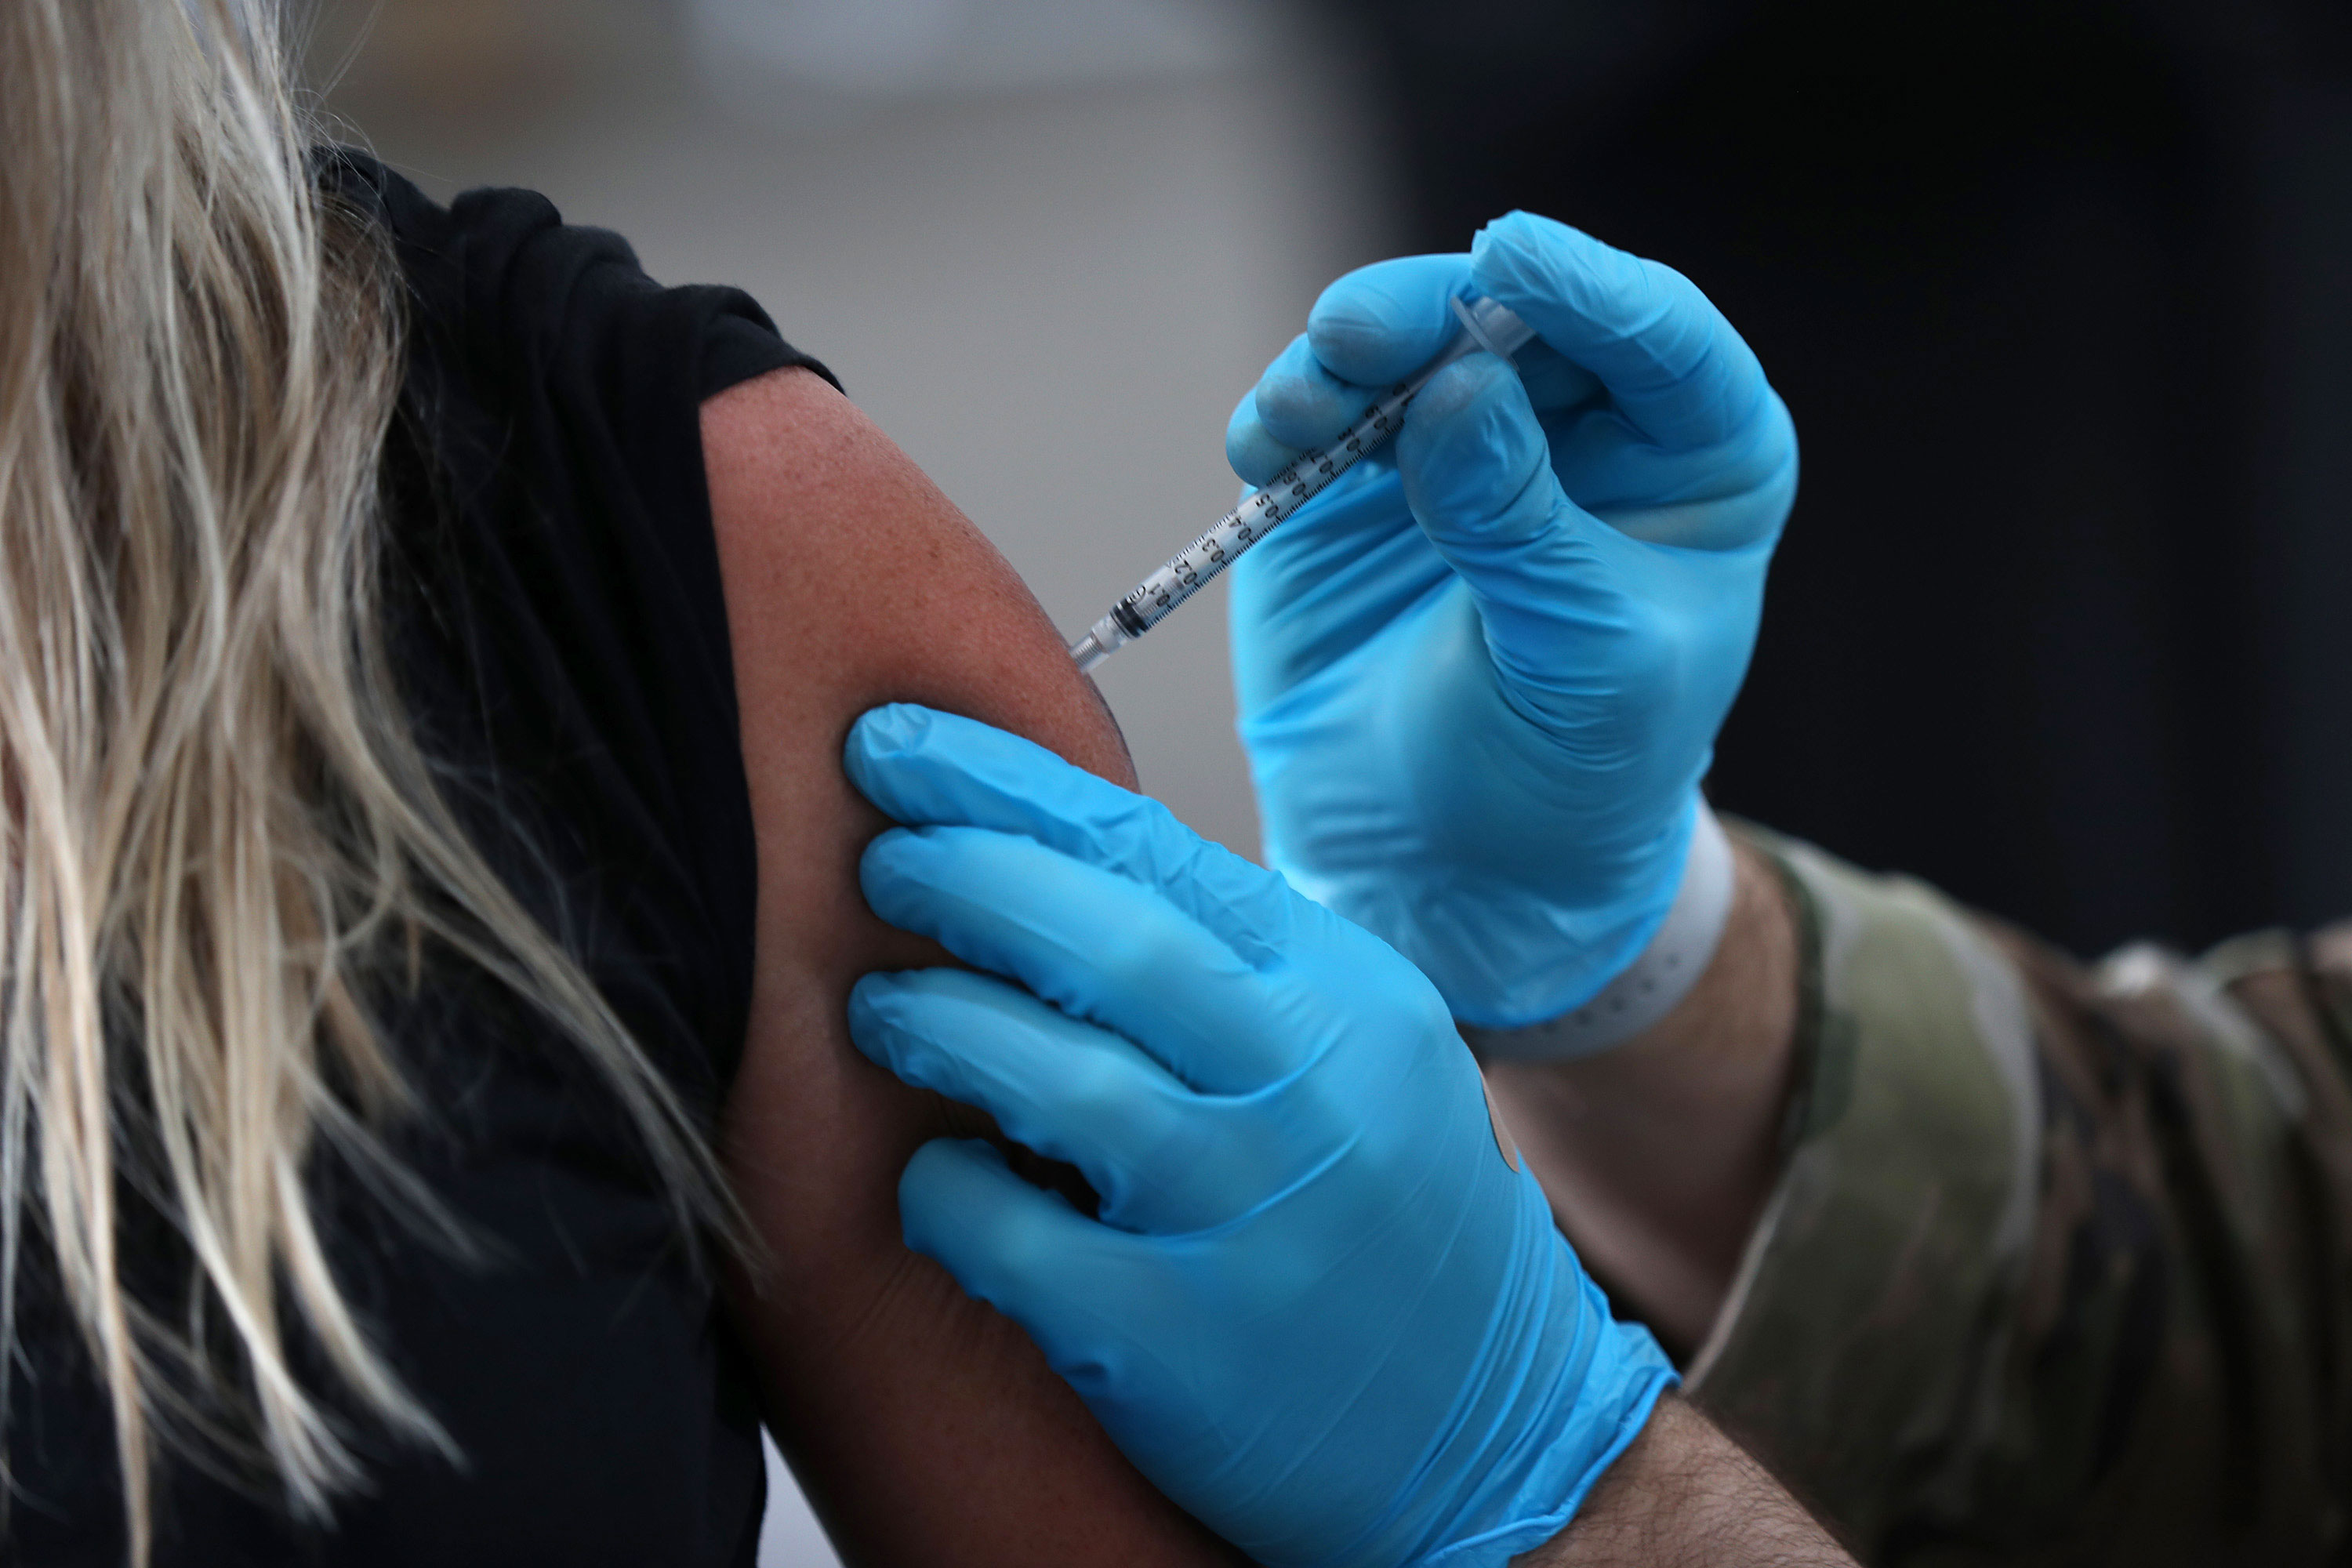 A person receives a Covid-19 vaccine on March 9 in North Miami, Florida.